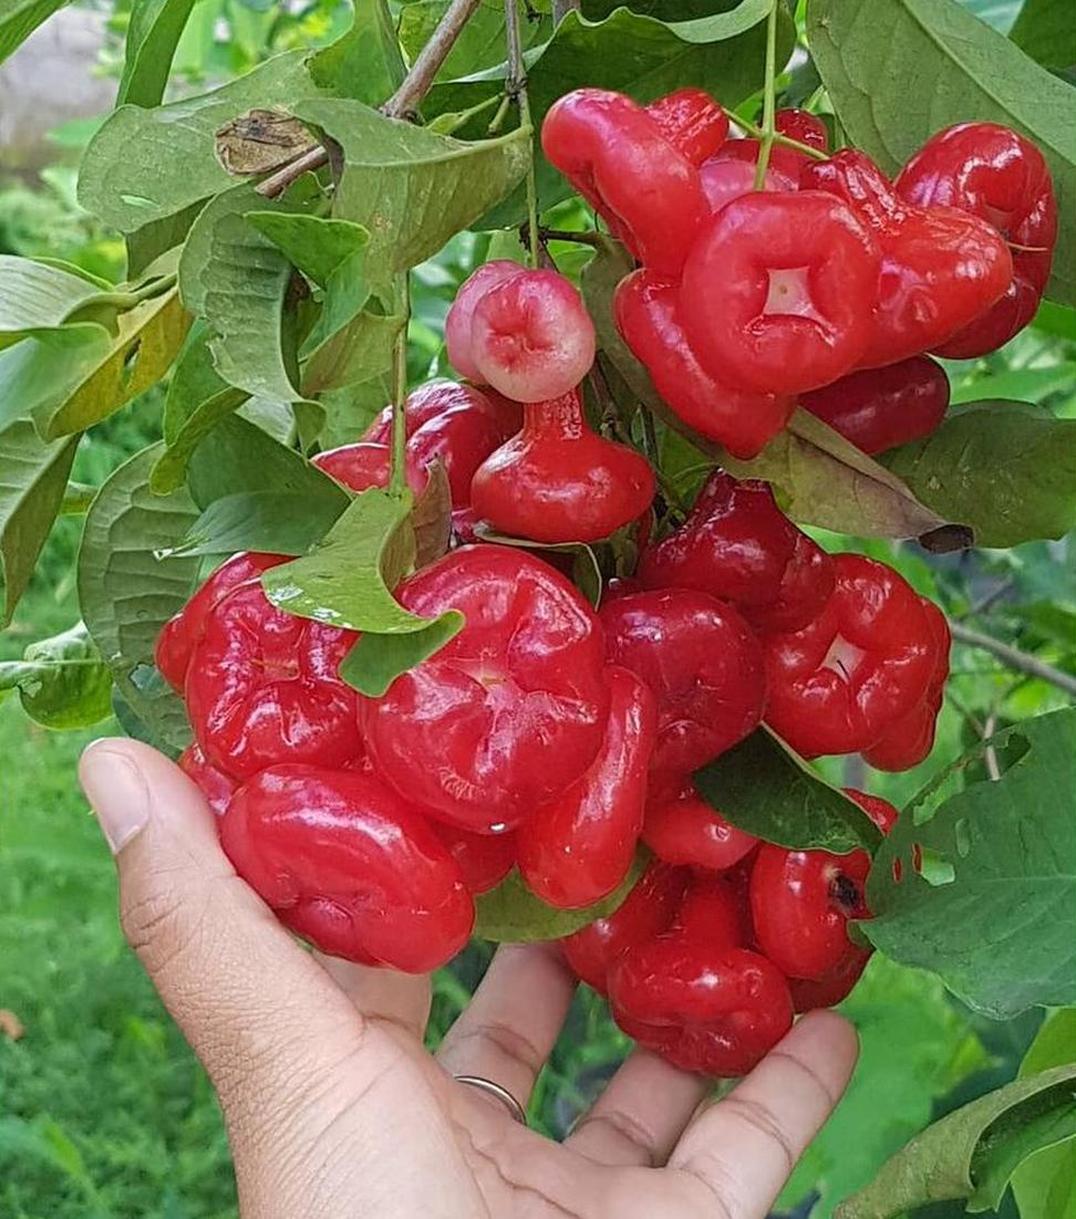 Gambar Produk harga bibit tanaman Bibit Jambu Air Ord Hasil Cangkok Tanaman Hias Buah Kancing Citra Merah King Rose Dalhari Pas Bengkulu